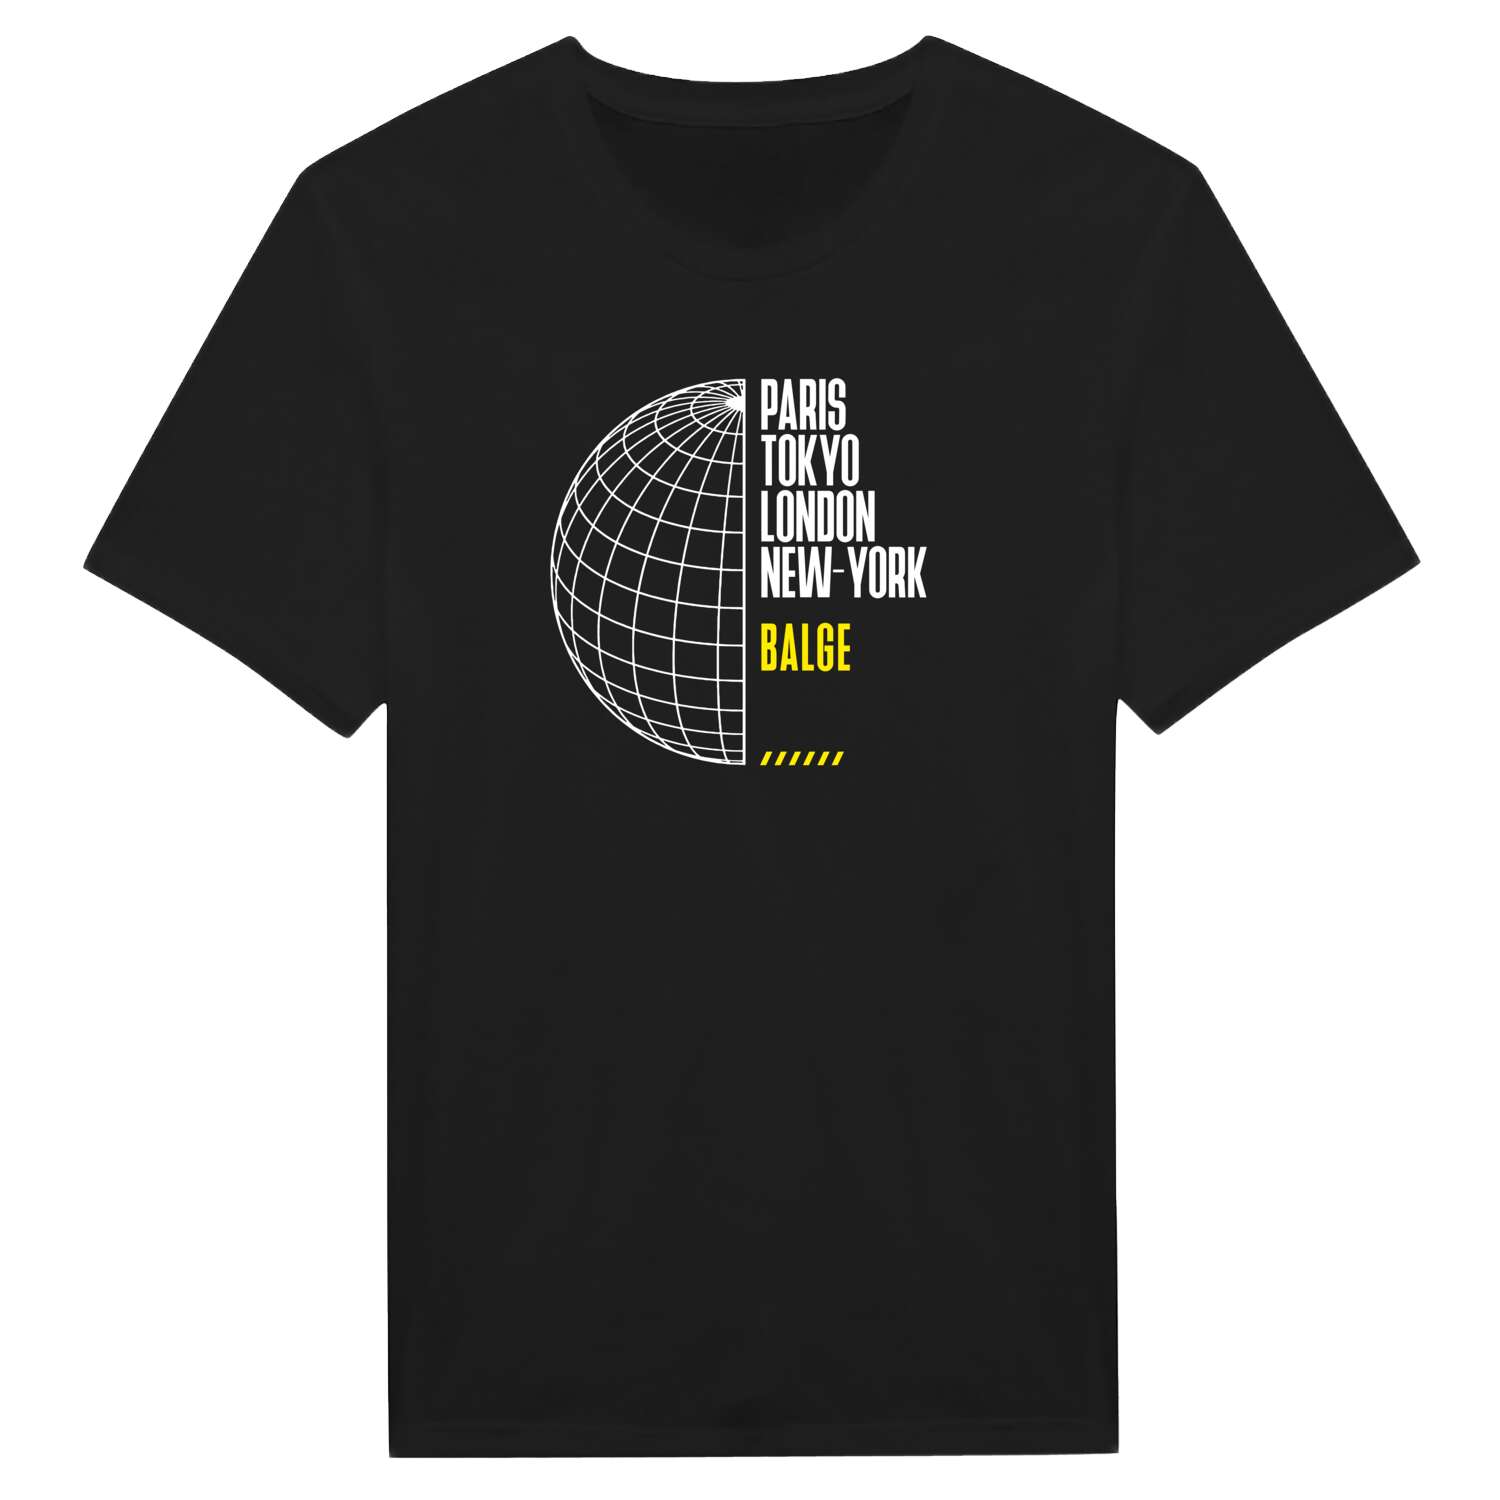 Balge T-Shirt »Paris Tokyo London«